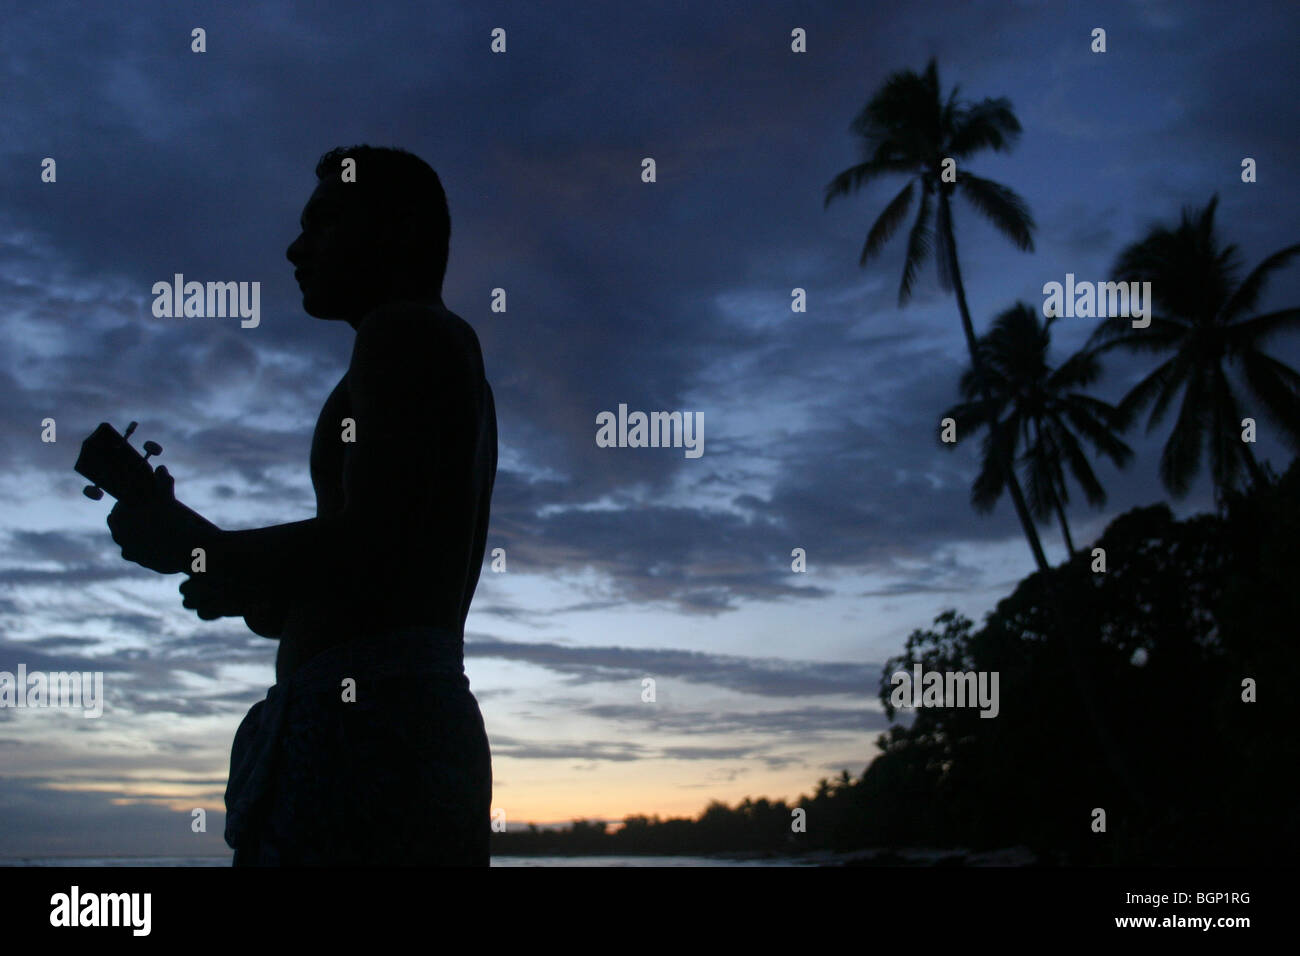 playing guitar and singing next to the sea, at dusk, on Kiribati atoll. Stock Photo